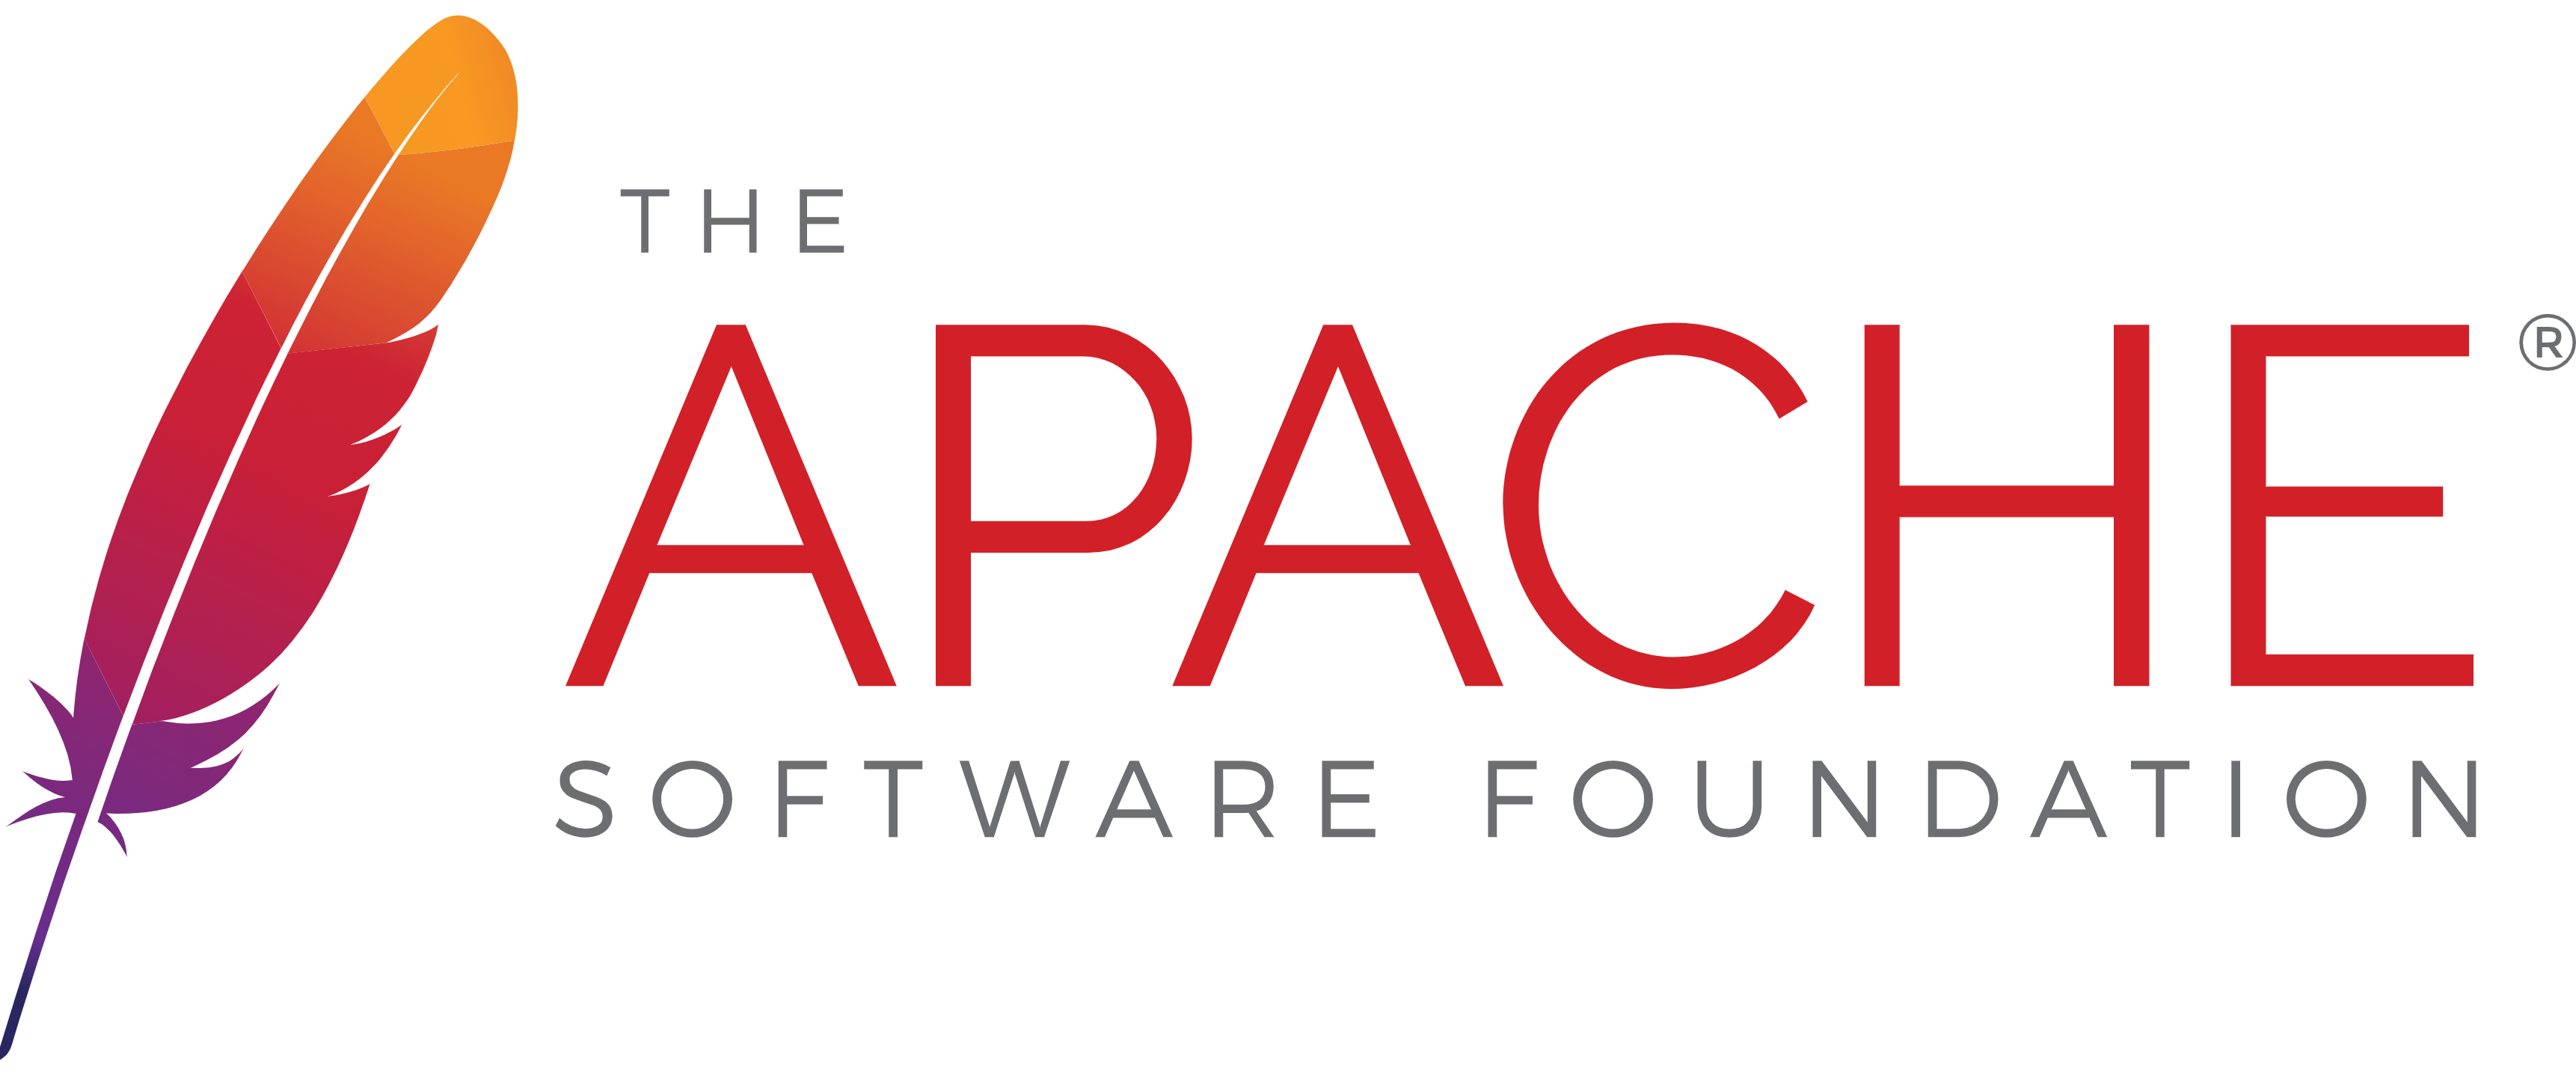 Ver documento do servidor da Web Apache